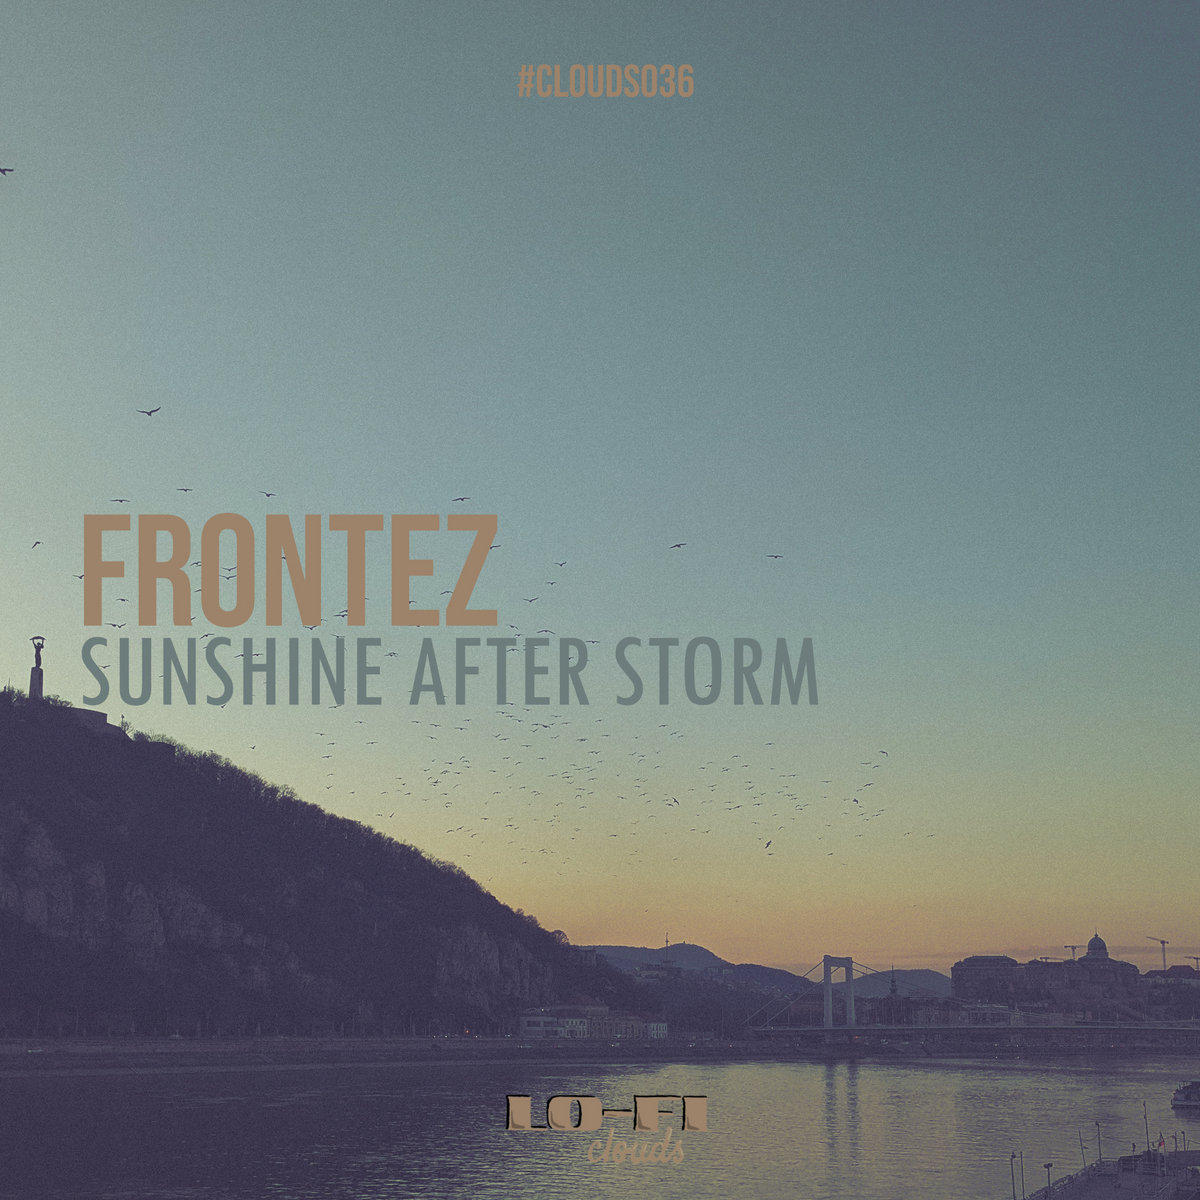 Frontez - Sunshine after storm - CLOUDS036